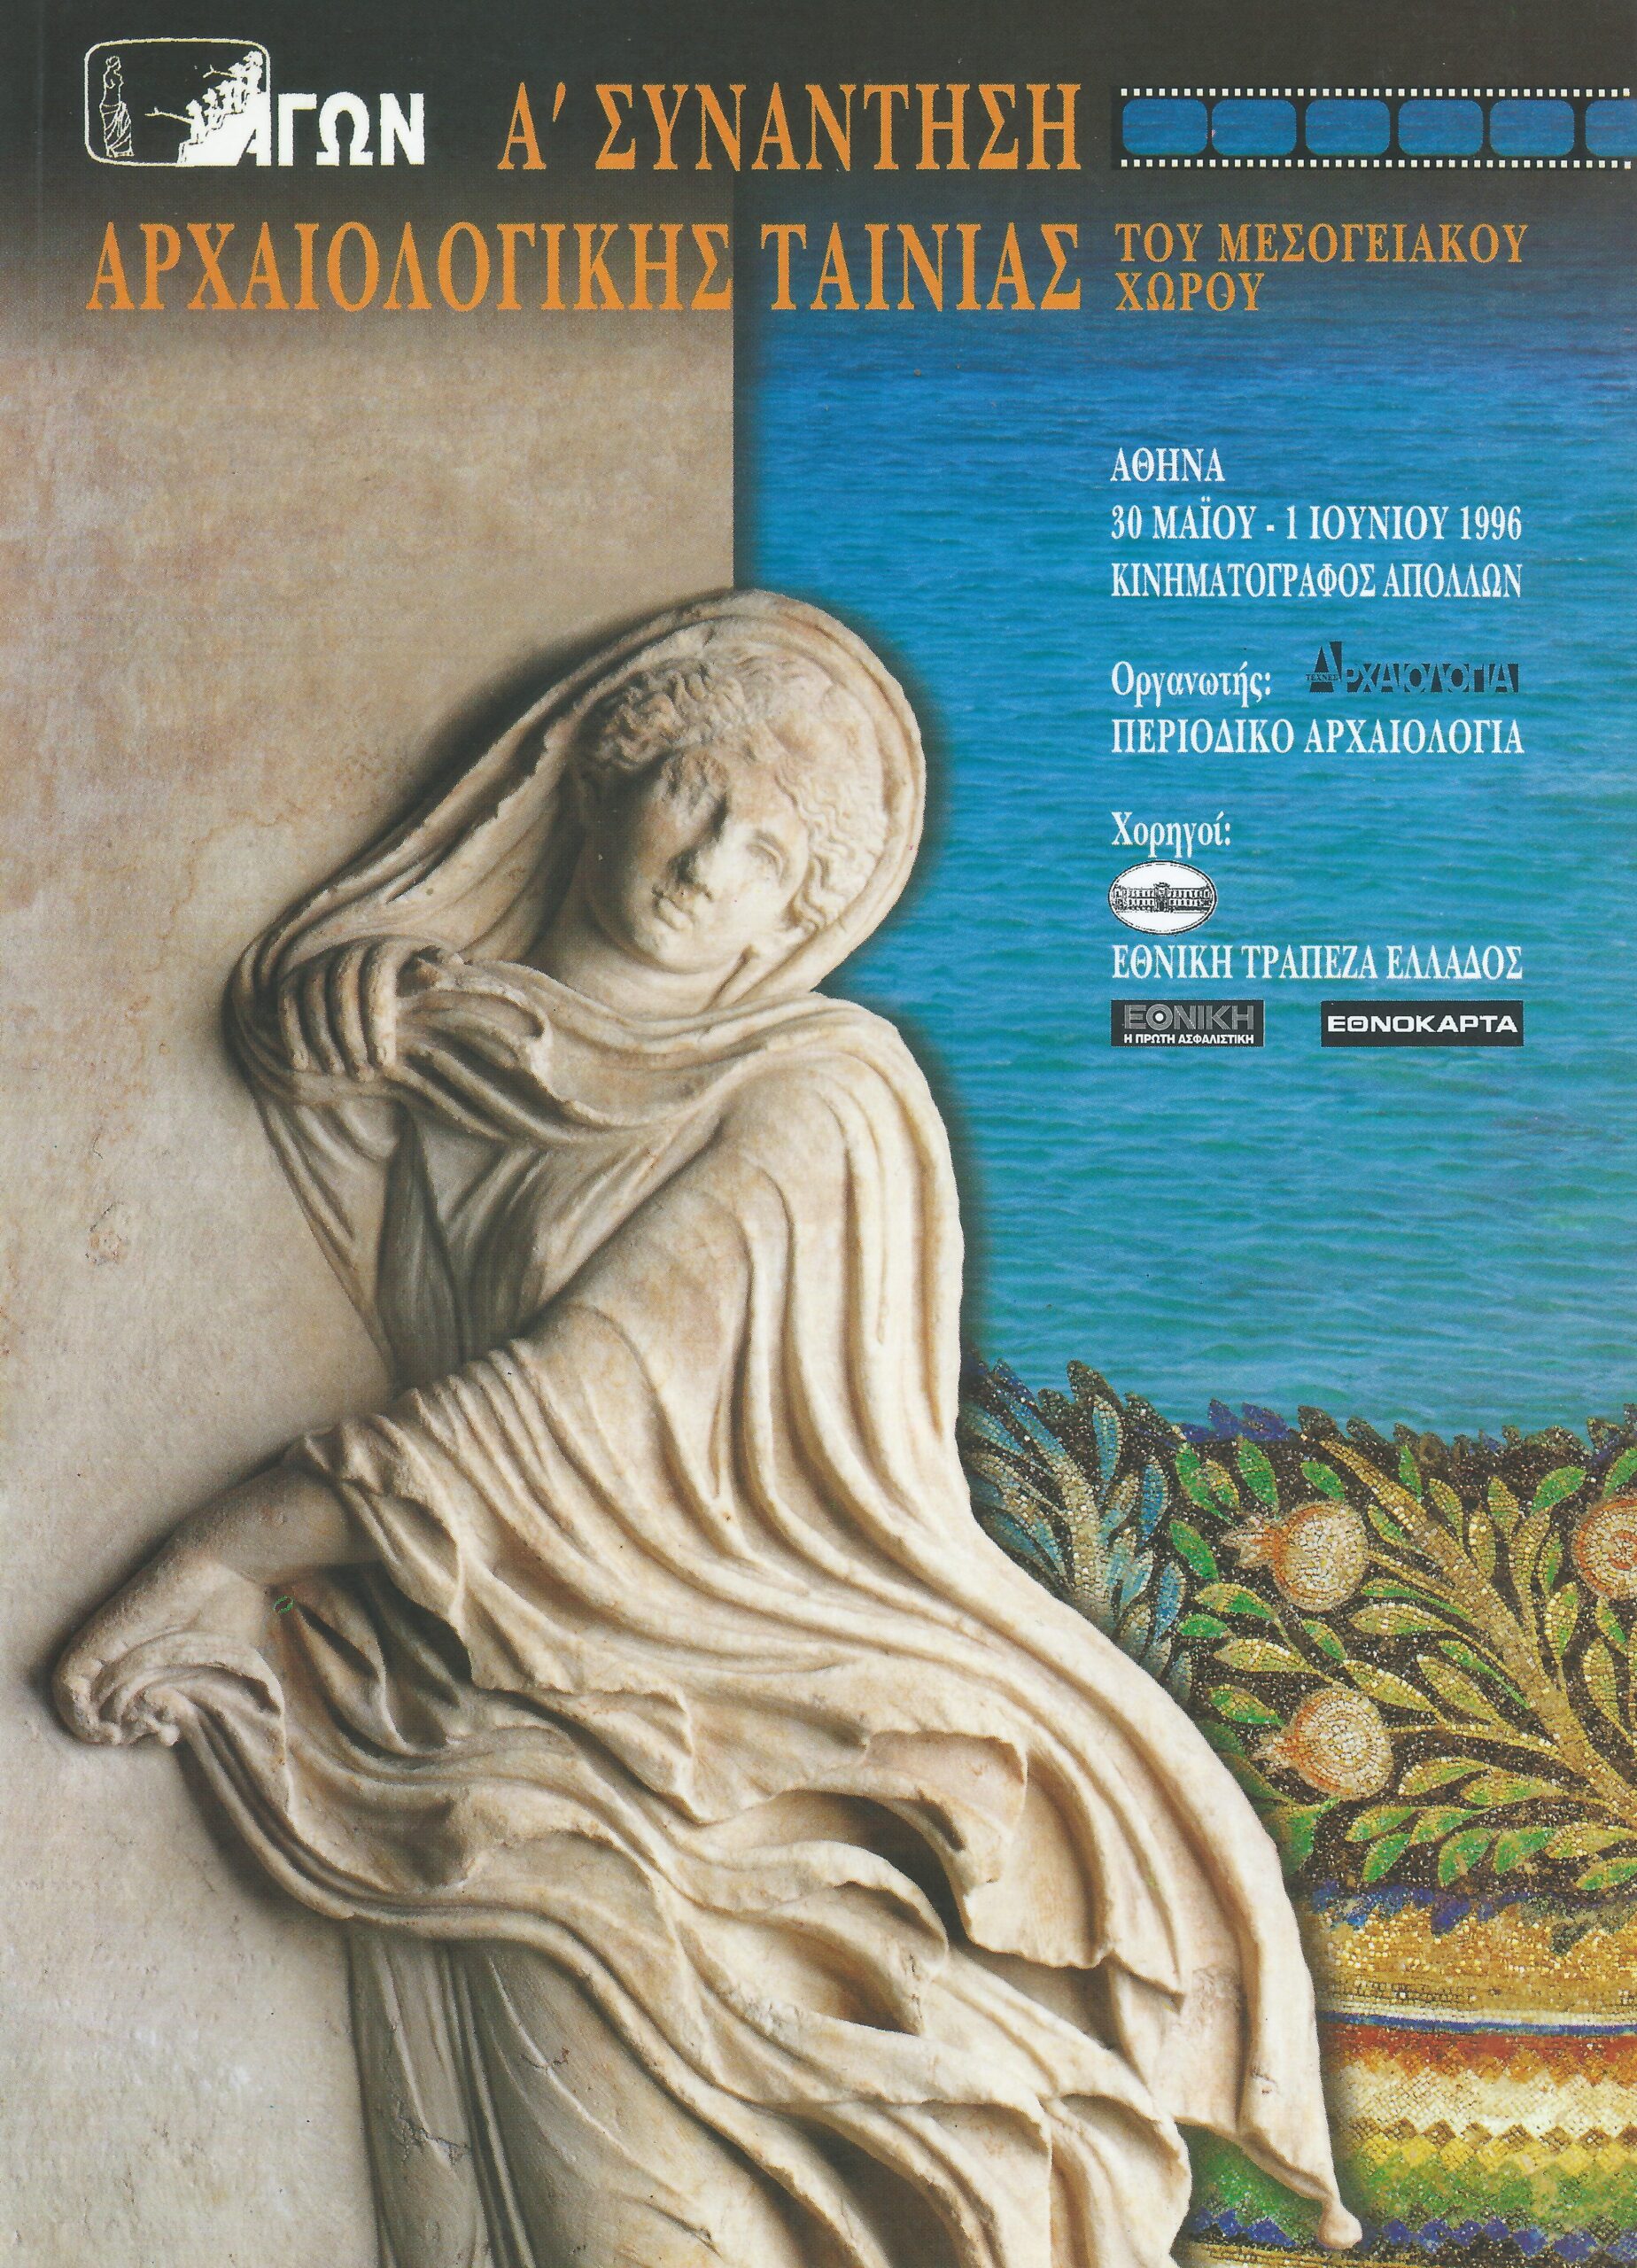 1η Διεθνής Συνάντηση Αρχαιολογικής Ταινίας του Μεσογειακού Χώρου